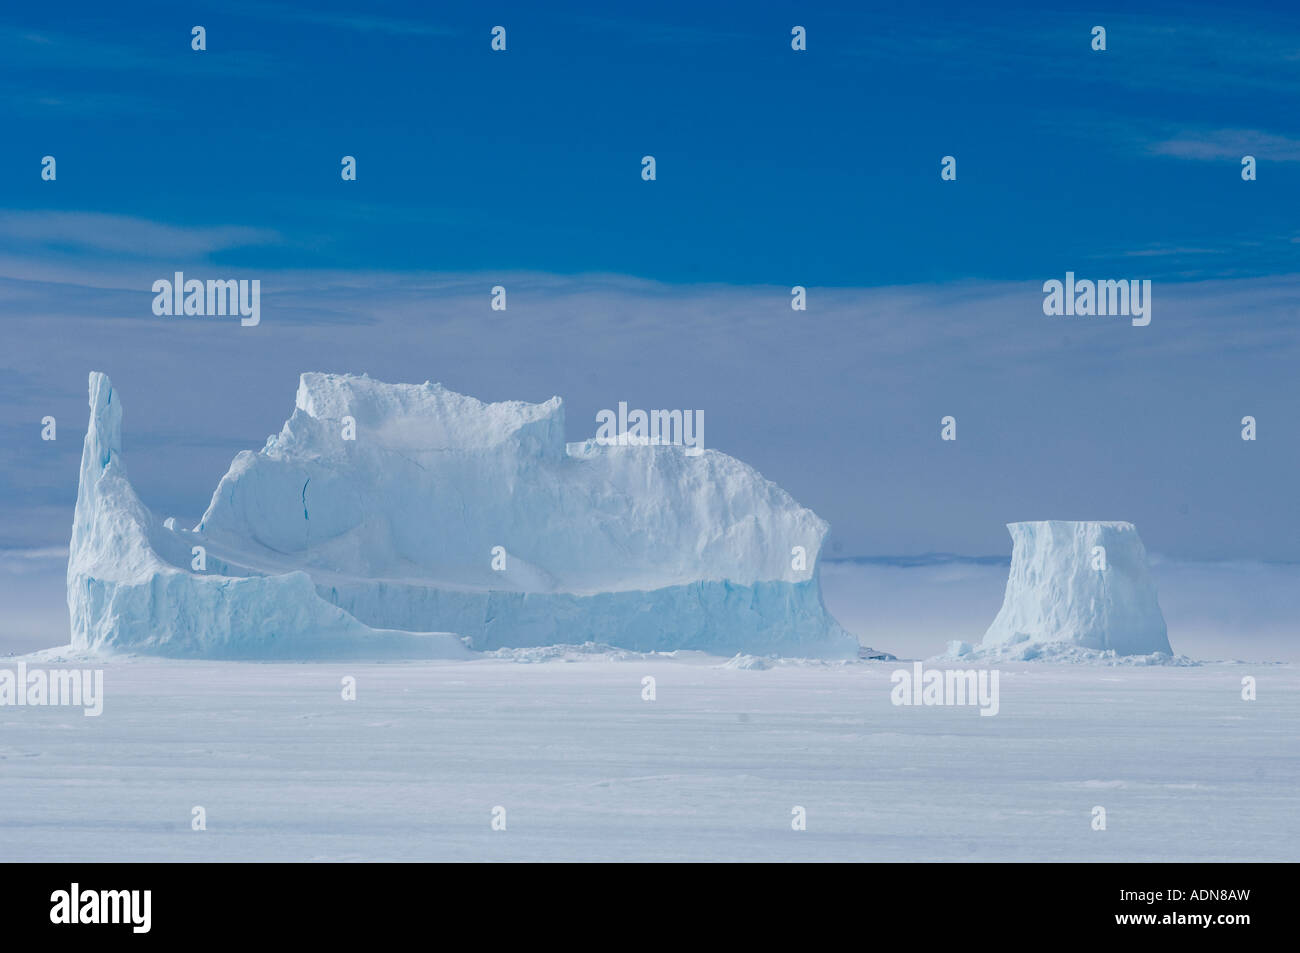 Enormi iceberg glaciale è bloccato in posizione quando il mare si blocca in inverno.da un ghiacciaio della Groenlandia, sarà liberato in primavera. Foto Stock